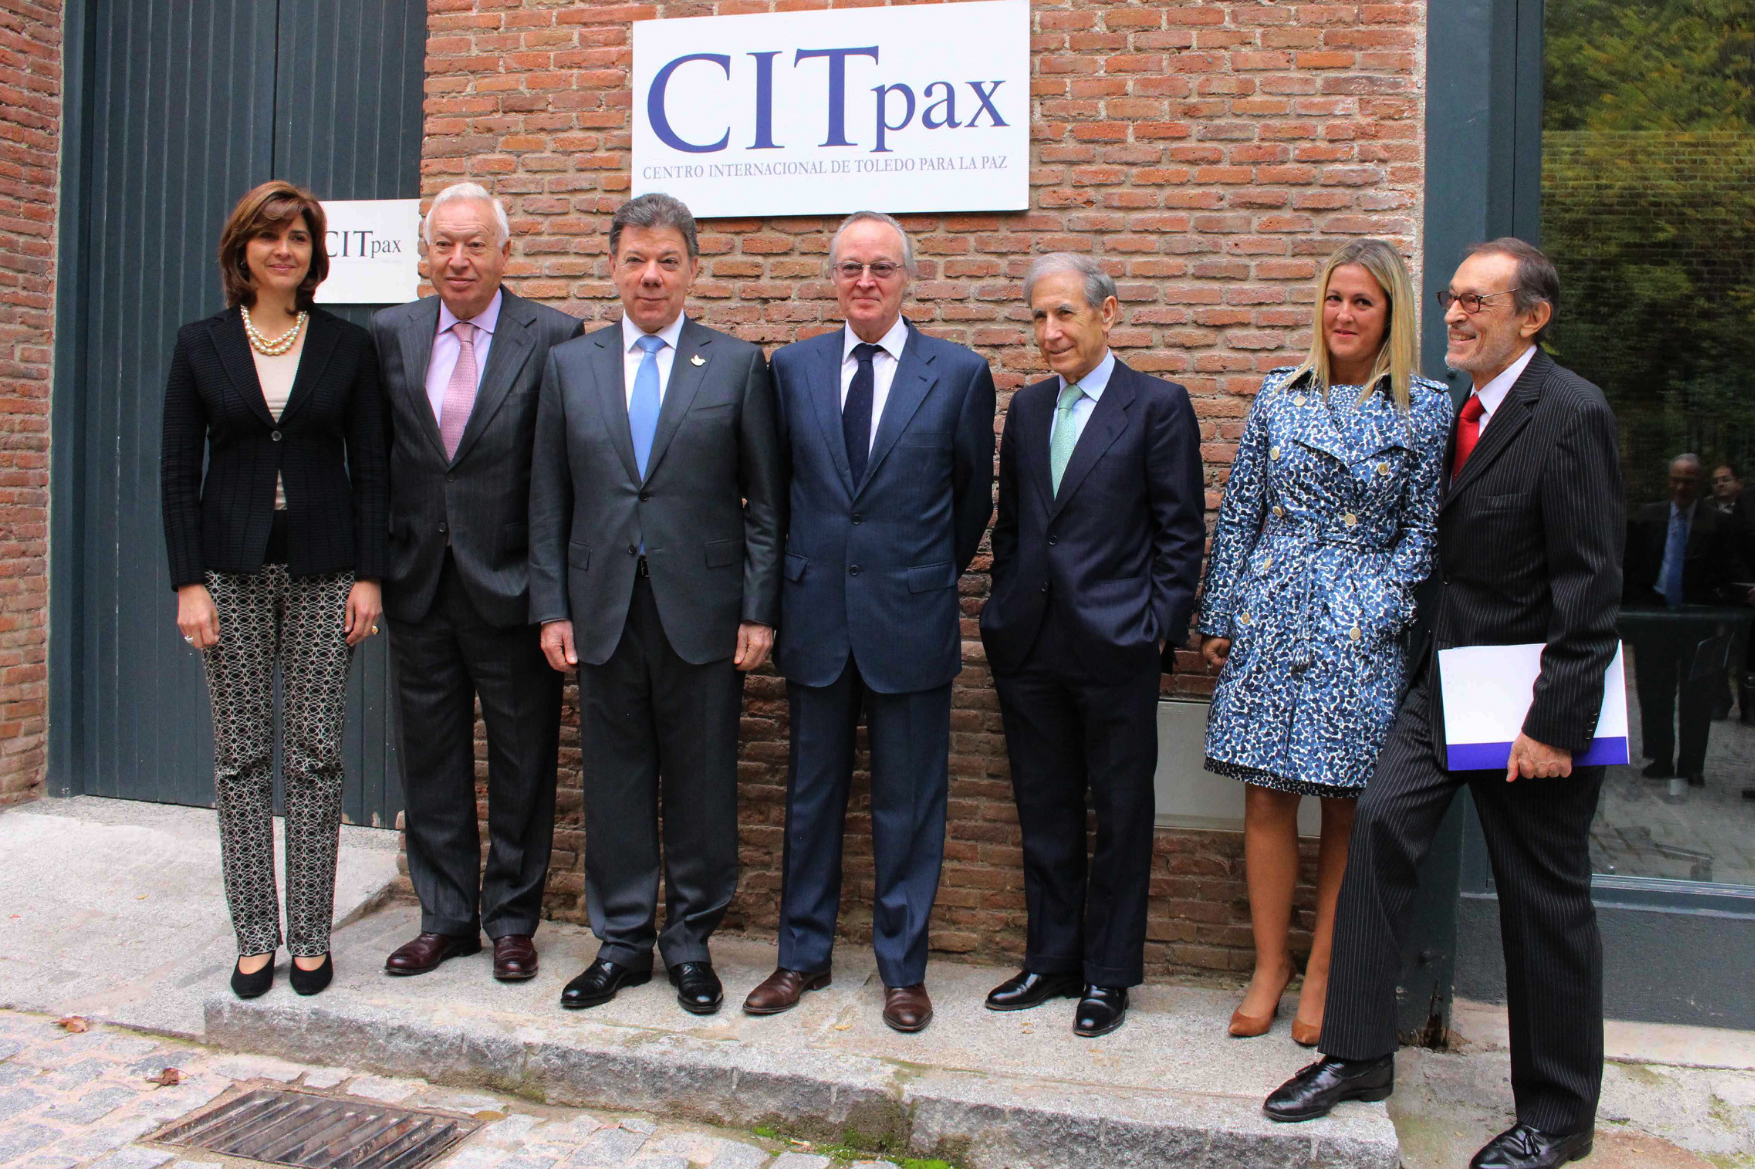 El Presidente Santos, la Canciller Holguín junto con su homólogo español, José Manuel García-Margallo, e integrantes Patronato del Centro de Toledo para la Paz (CITpax)